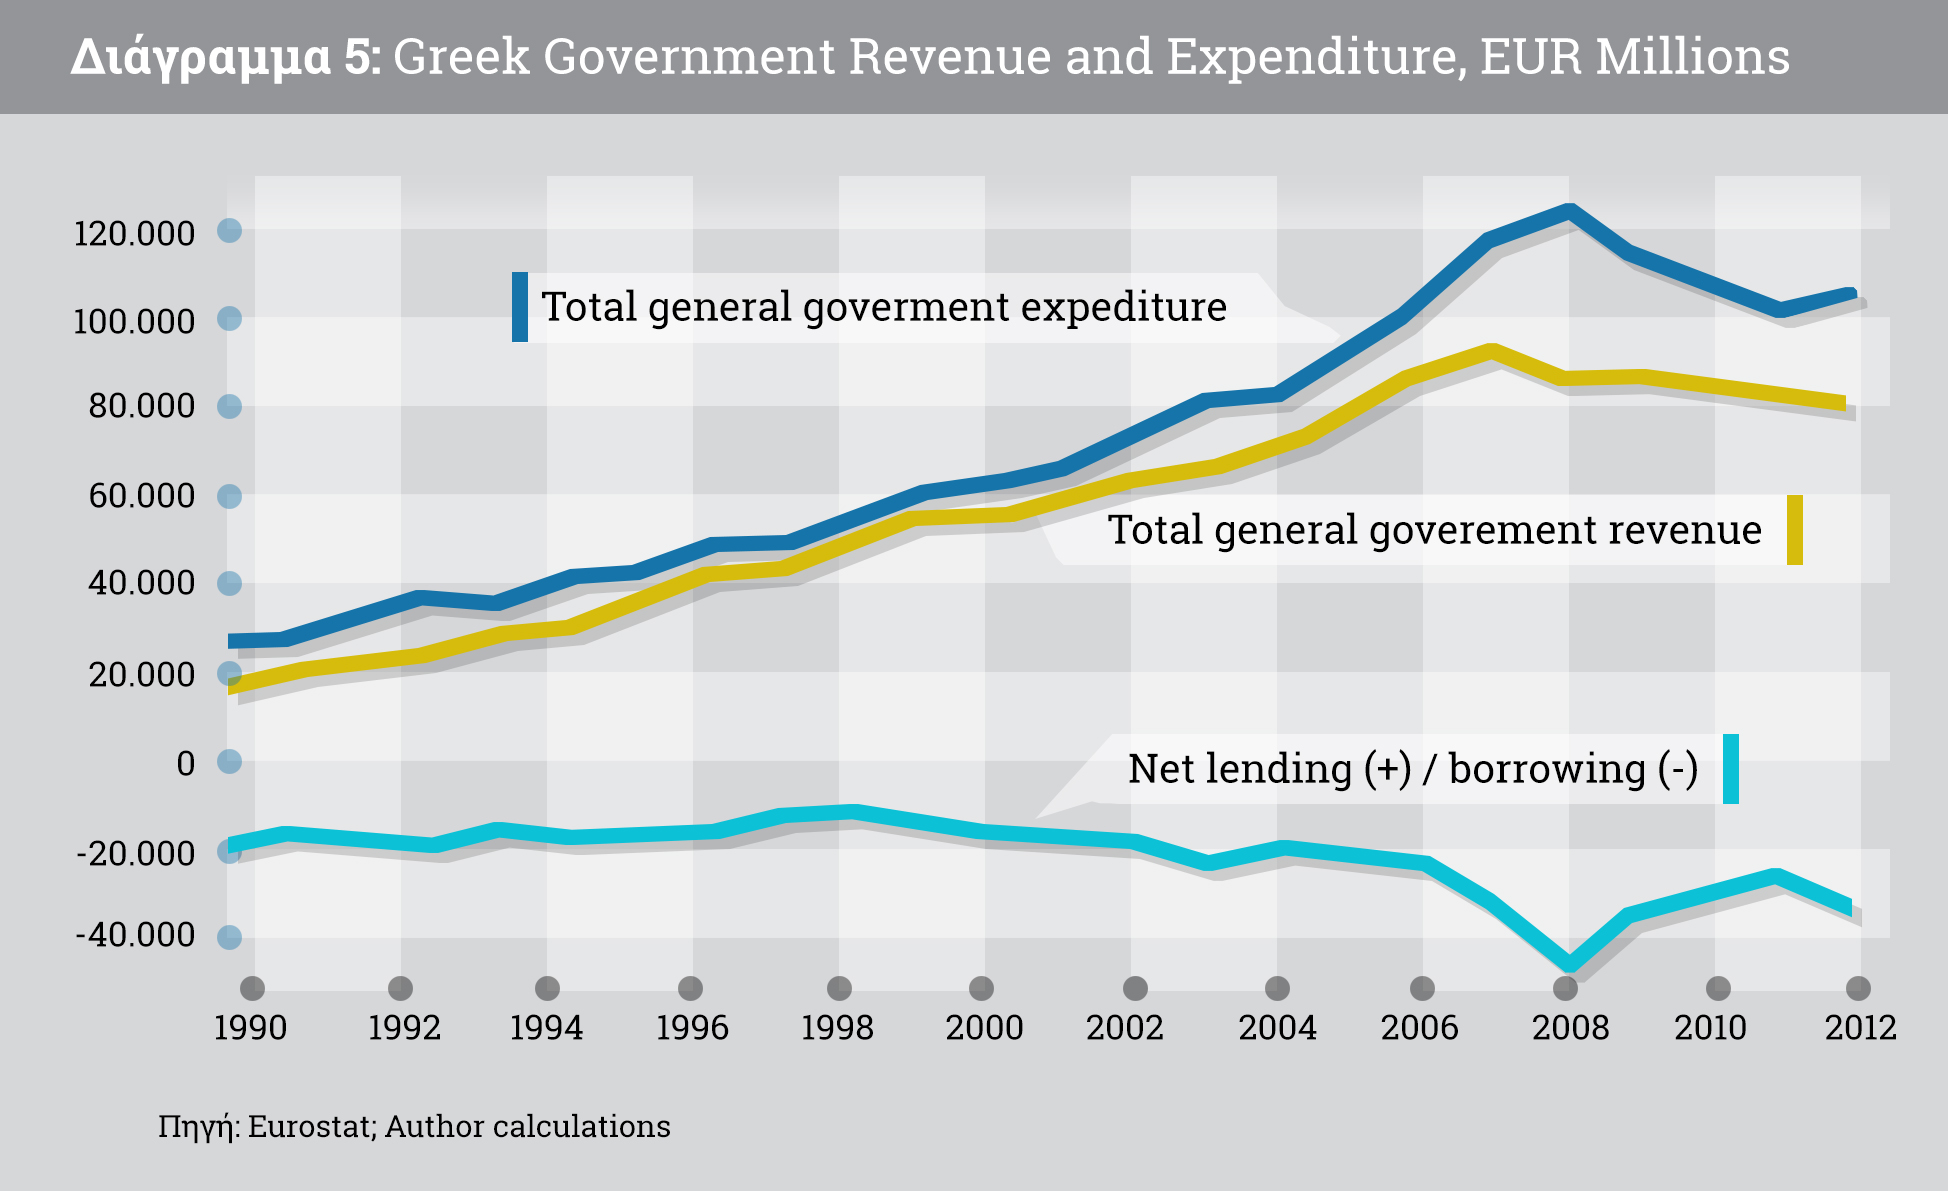 6. Ένα πρόγραμμα κοινωνικής και εθνικής αναγέννησης για την Ελλάδα εξαιρετικά αποδυναμωμένη και δύσκολα μπορεί να αντιμετωπίσει το τρέχον βάρος του δημόσιου χρέους, όπως έχει ήδη καταδειχθεί παραπάνω.